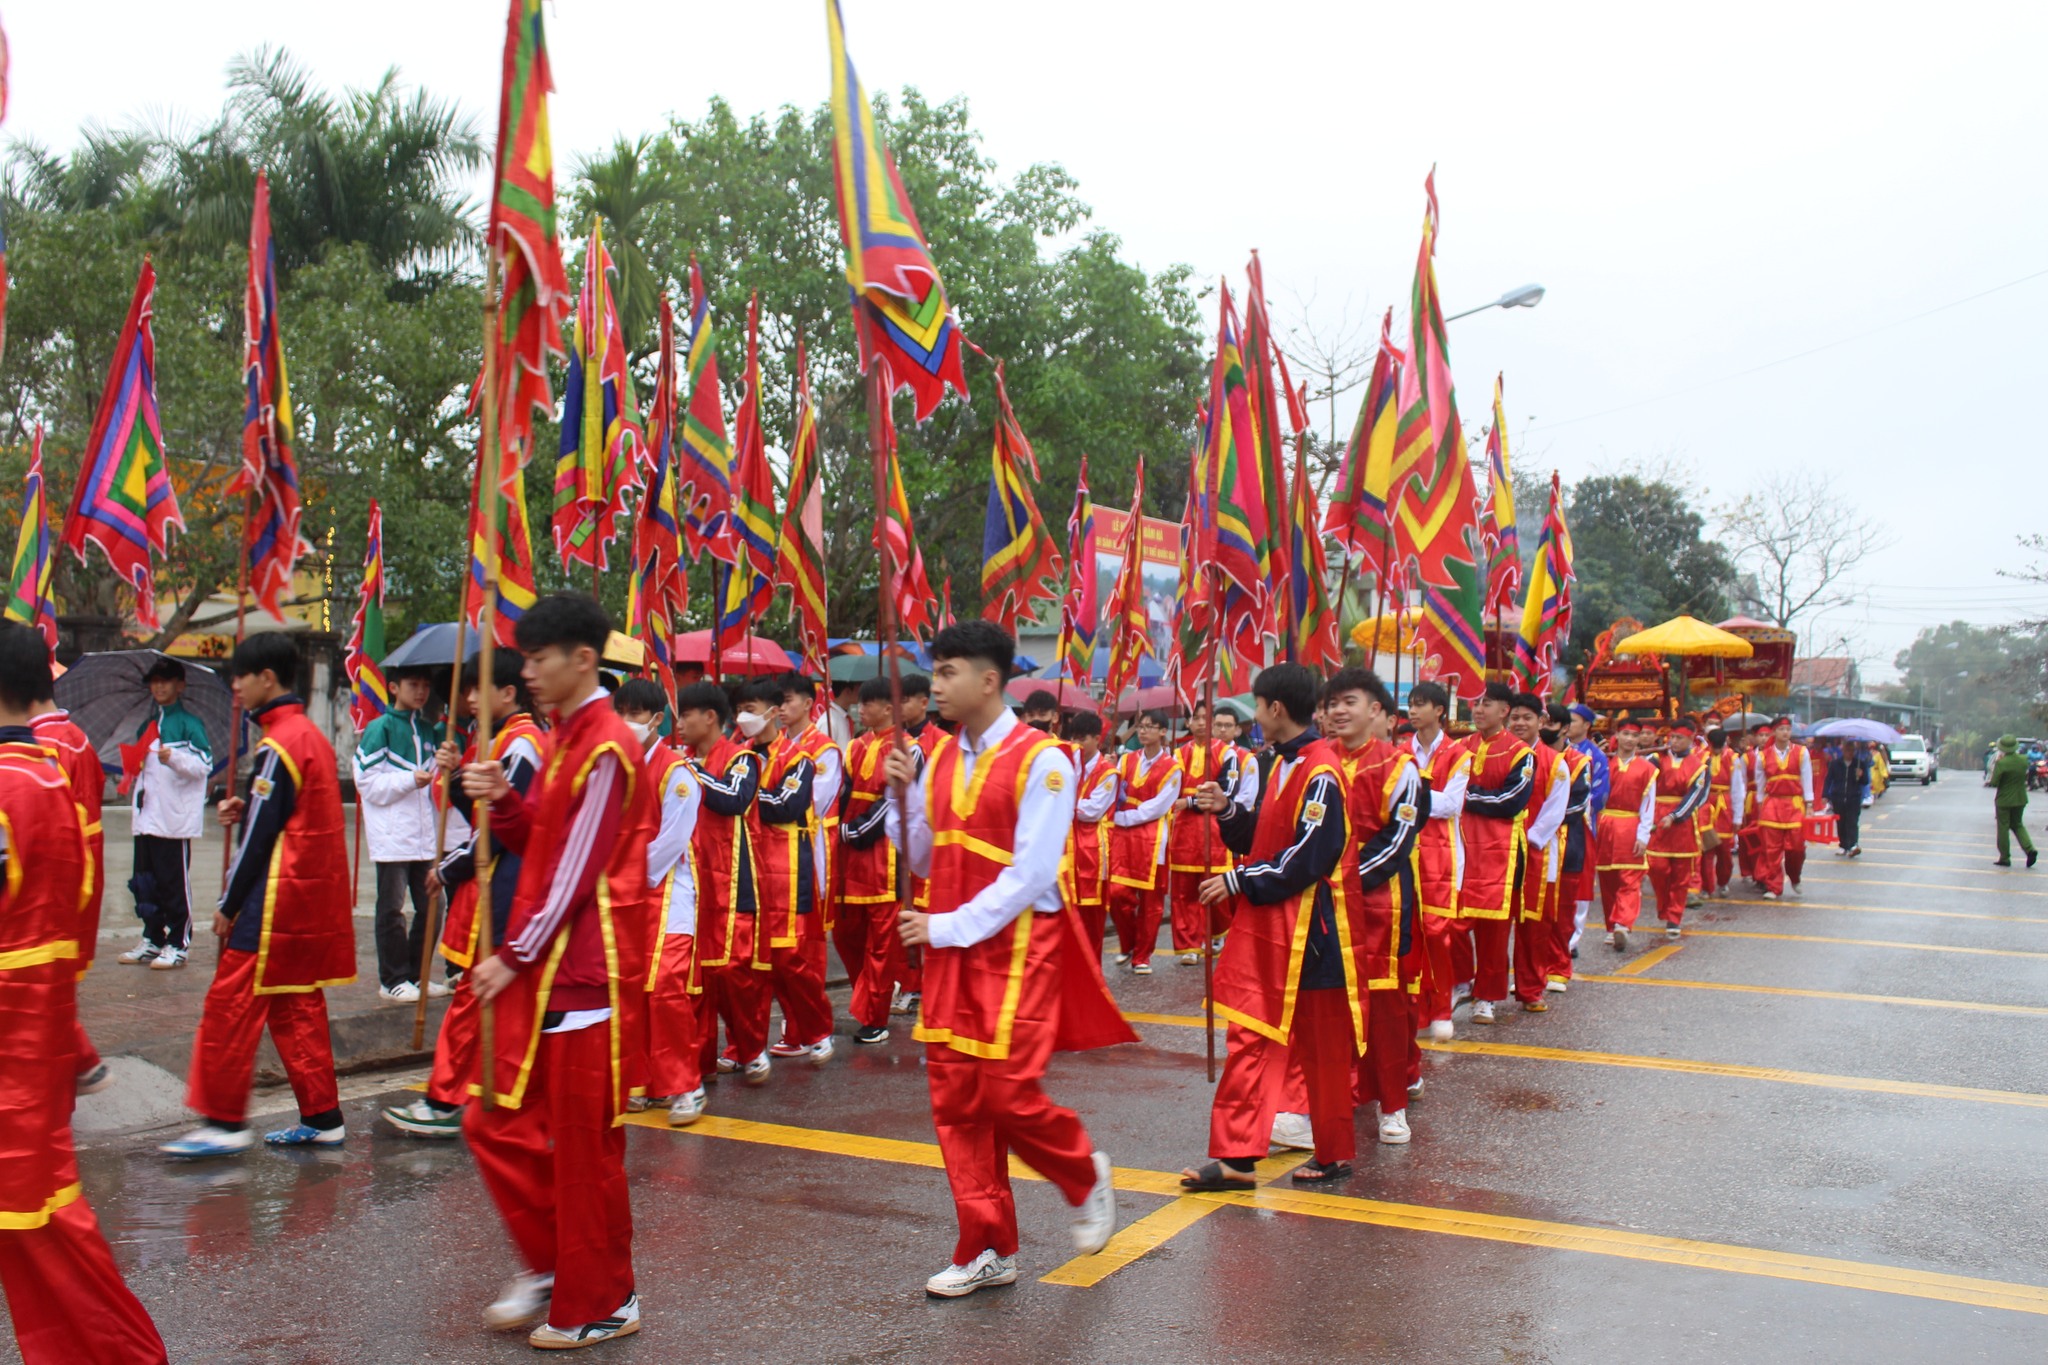 Nét độc đáo của lễ hội ở Quảng Ninh vừa được công nhận Di sản văn hóa phi vật thể cấp quốc gia - Ảnh 1.